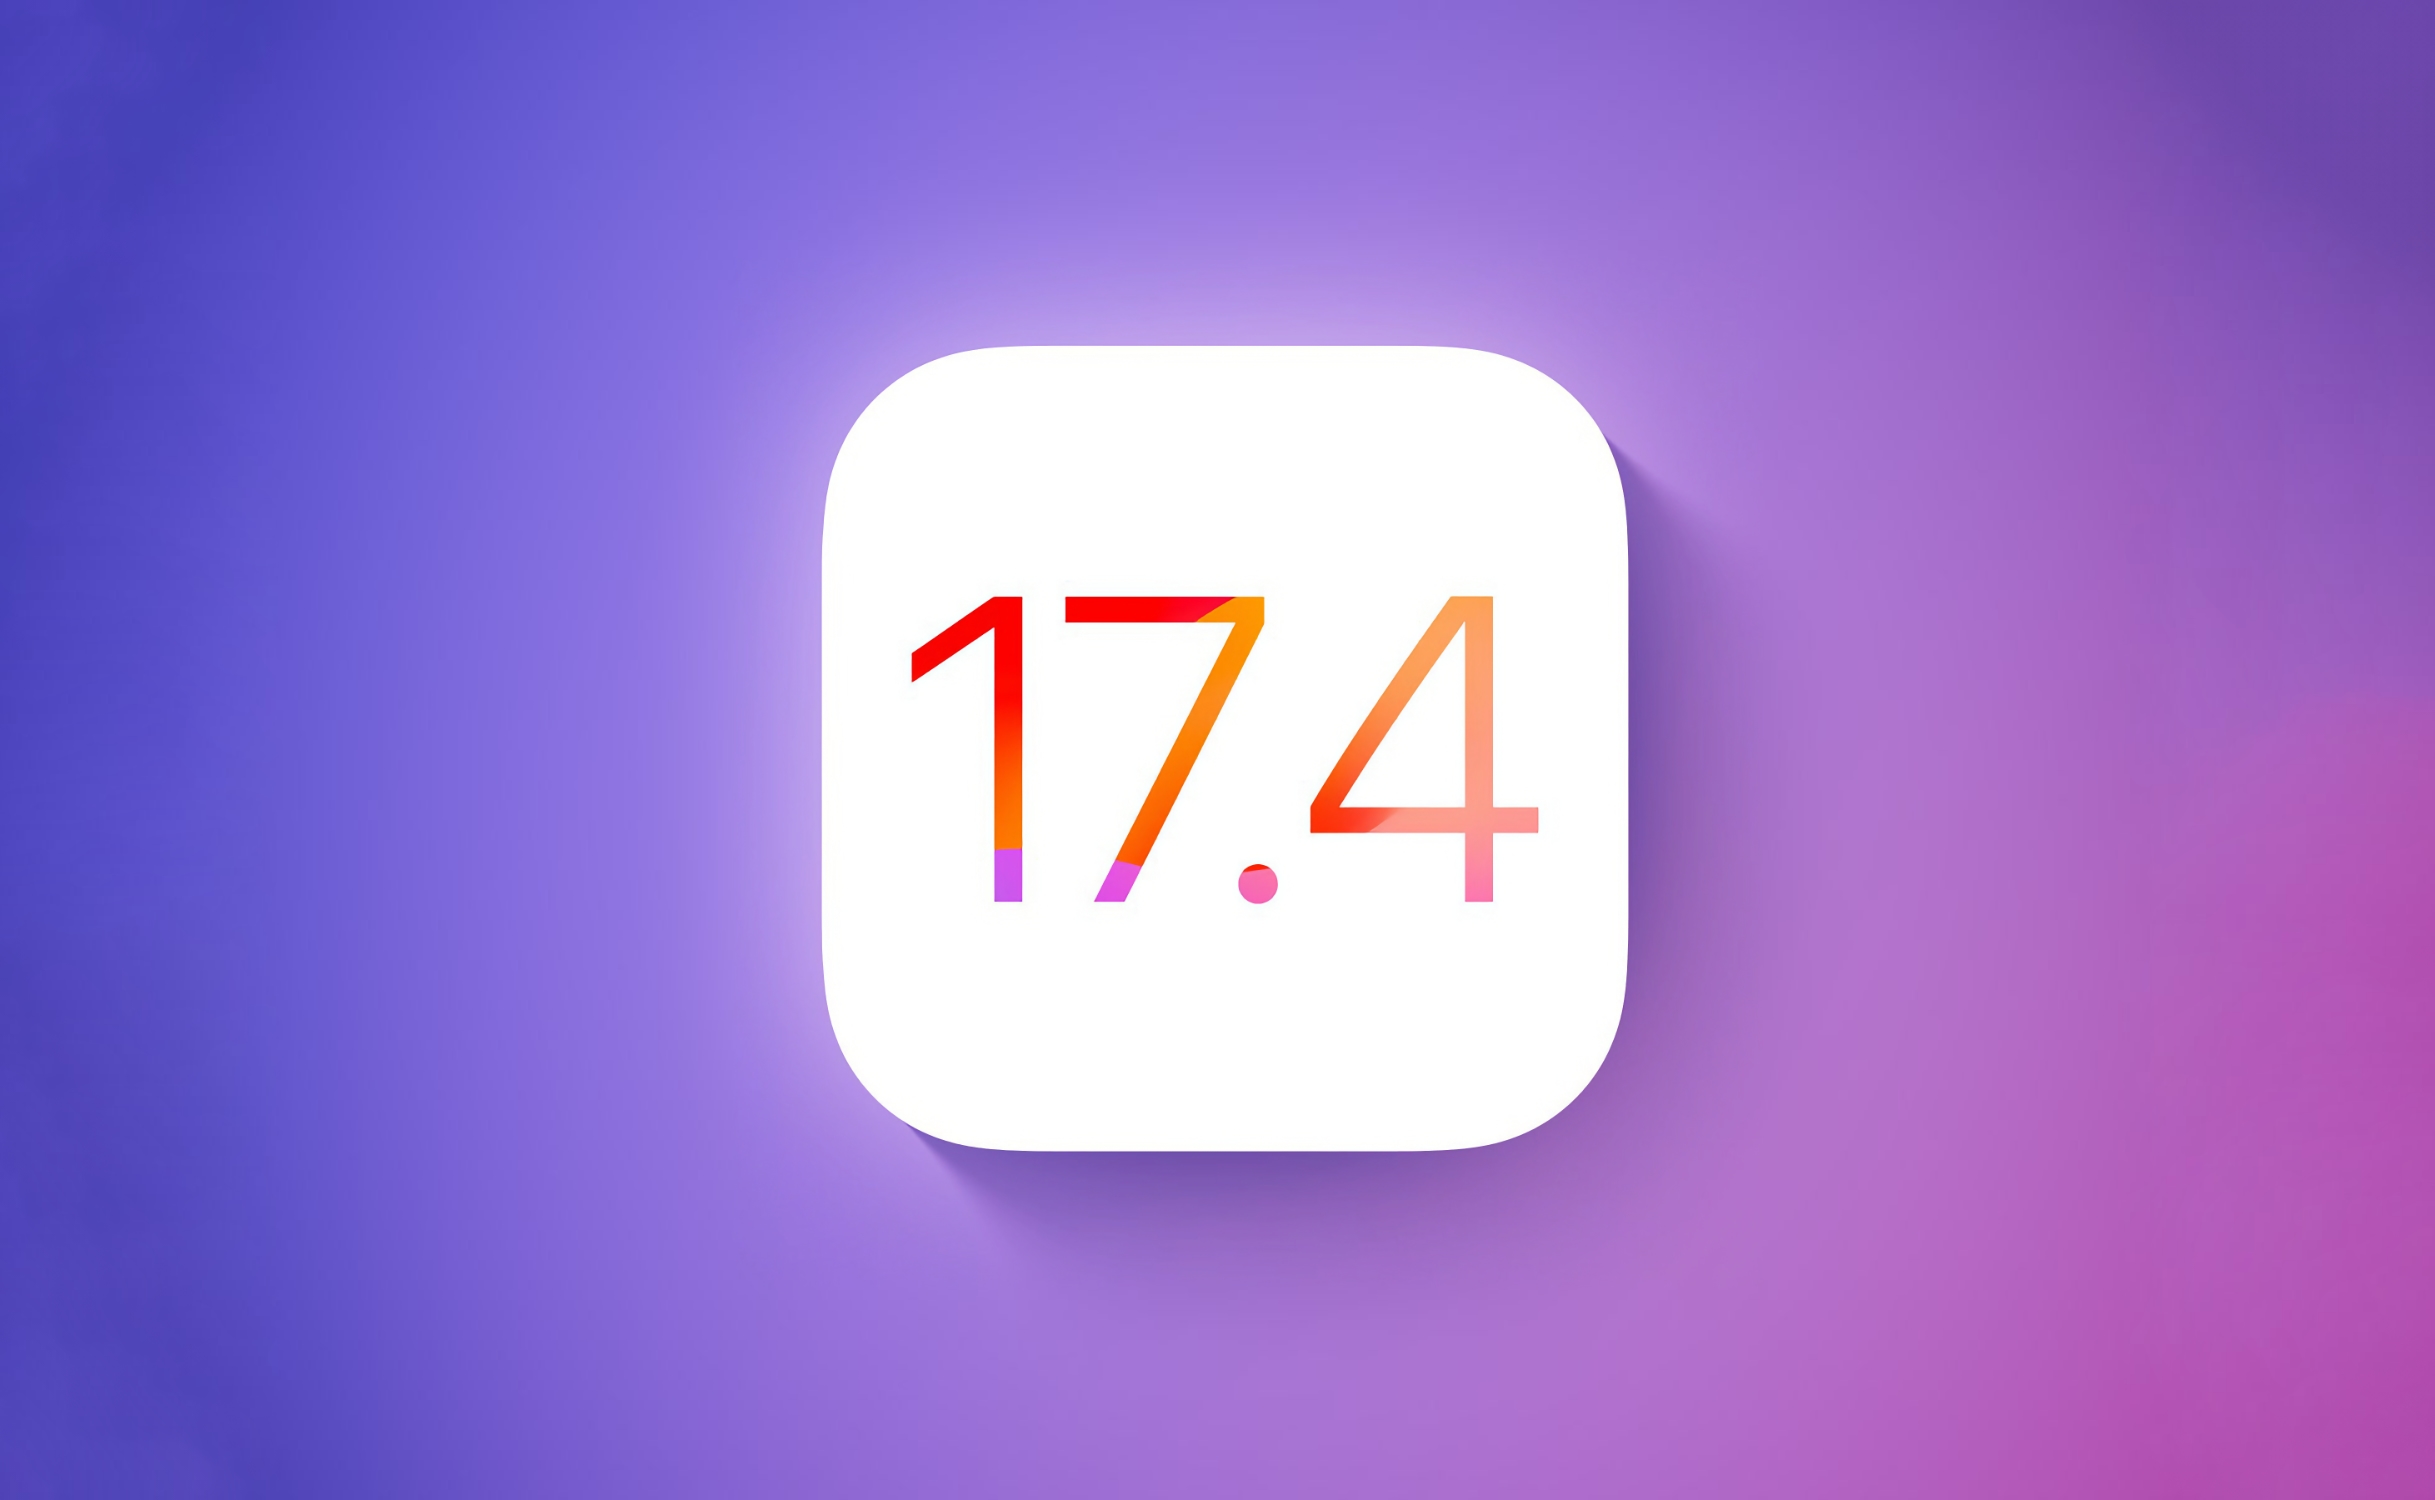 La version stable d'iOS 17.4 est disponible : quelles sont les nouveautés ?